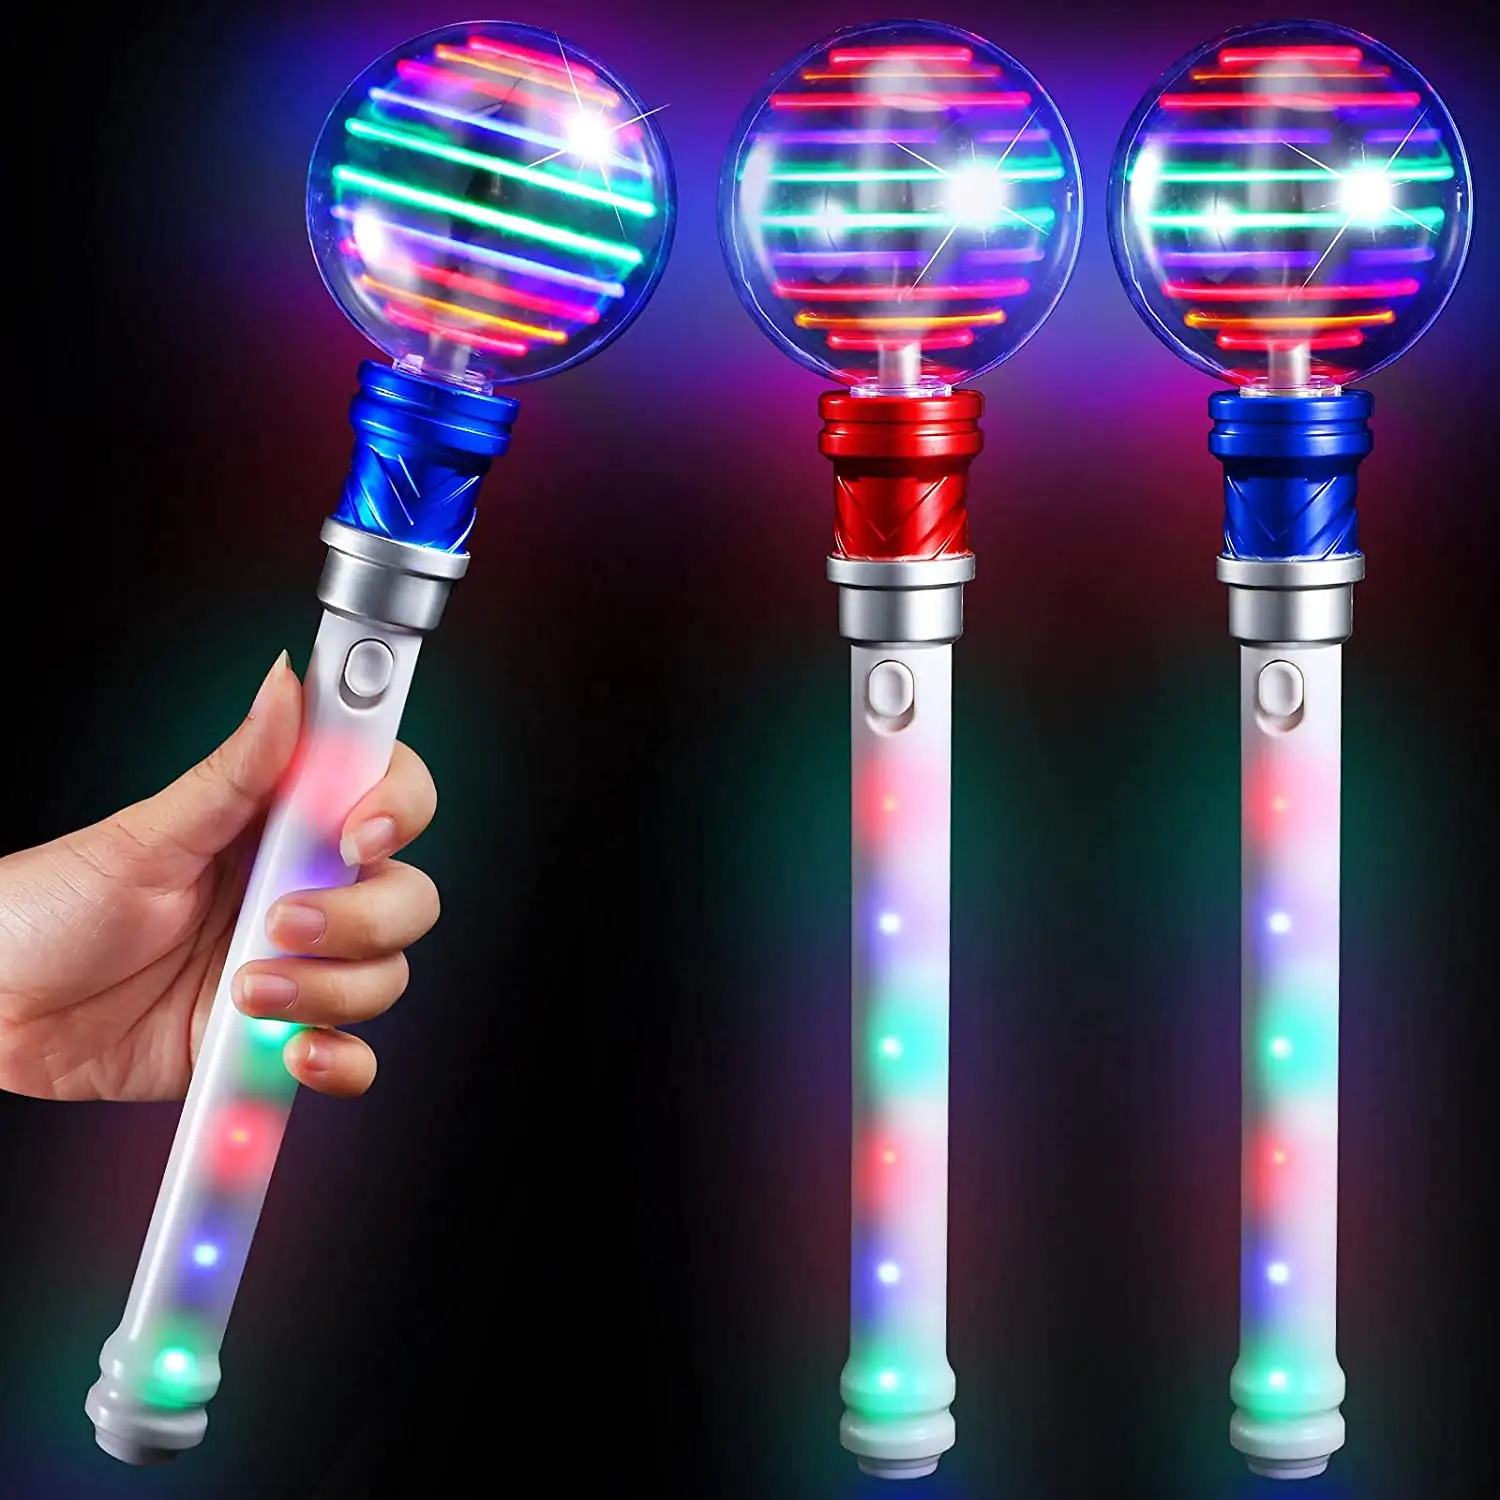 회전하는 매직 볼 지팡이 인치 배터리가있는 어린이를위한 LED 회전 장난감 포함 소년과 소녀를위한 훌륭한 선물 아이디어 재미있는 생일